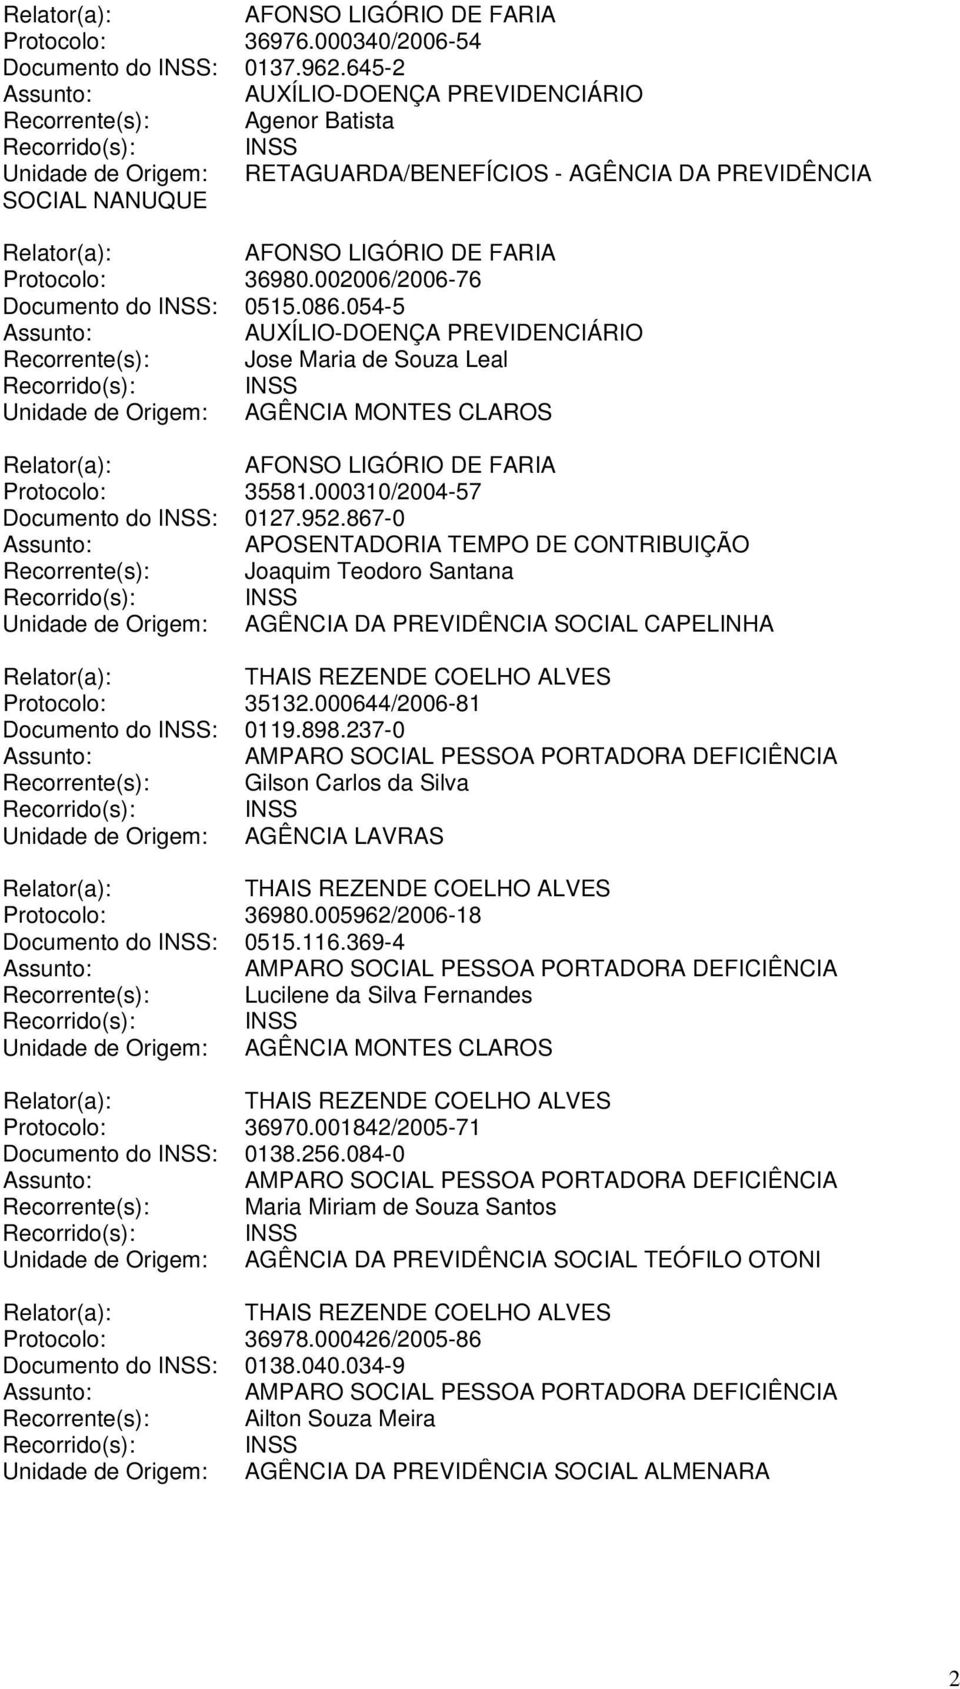 086.054-5 Recorrente(s): Jose Maria de Souza Leal Unidade de Origem: AGÊNCIA MONTES CLAROS AFONSO LIGÓRIO DE FARIA Protocolo: 35581.000310/2004-57 Documento do INSS: 0127.952.